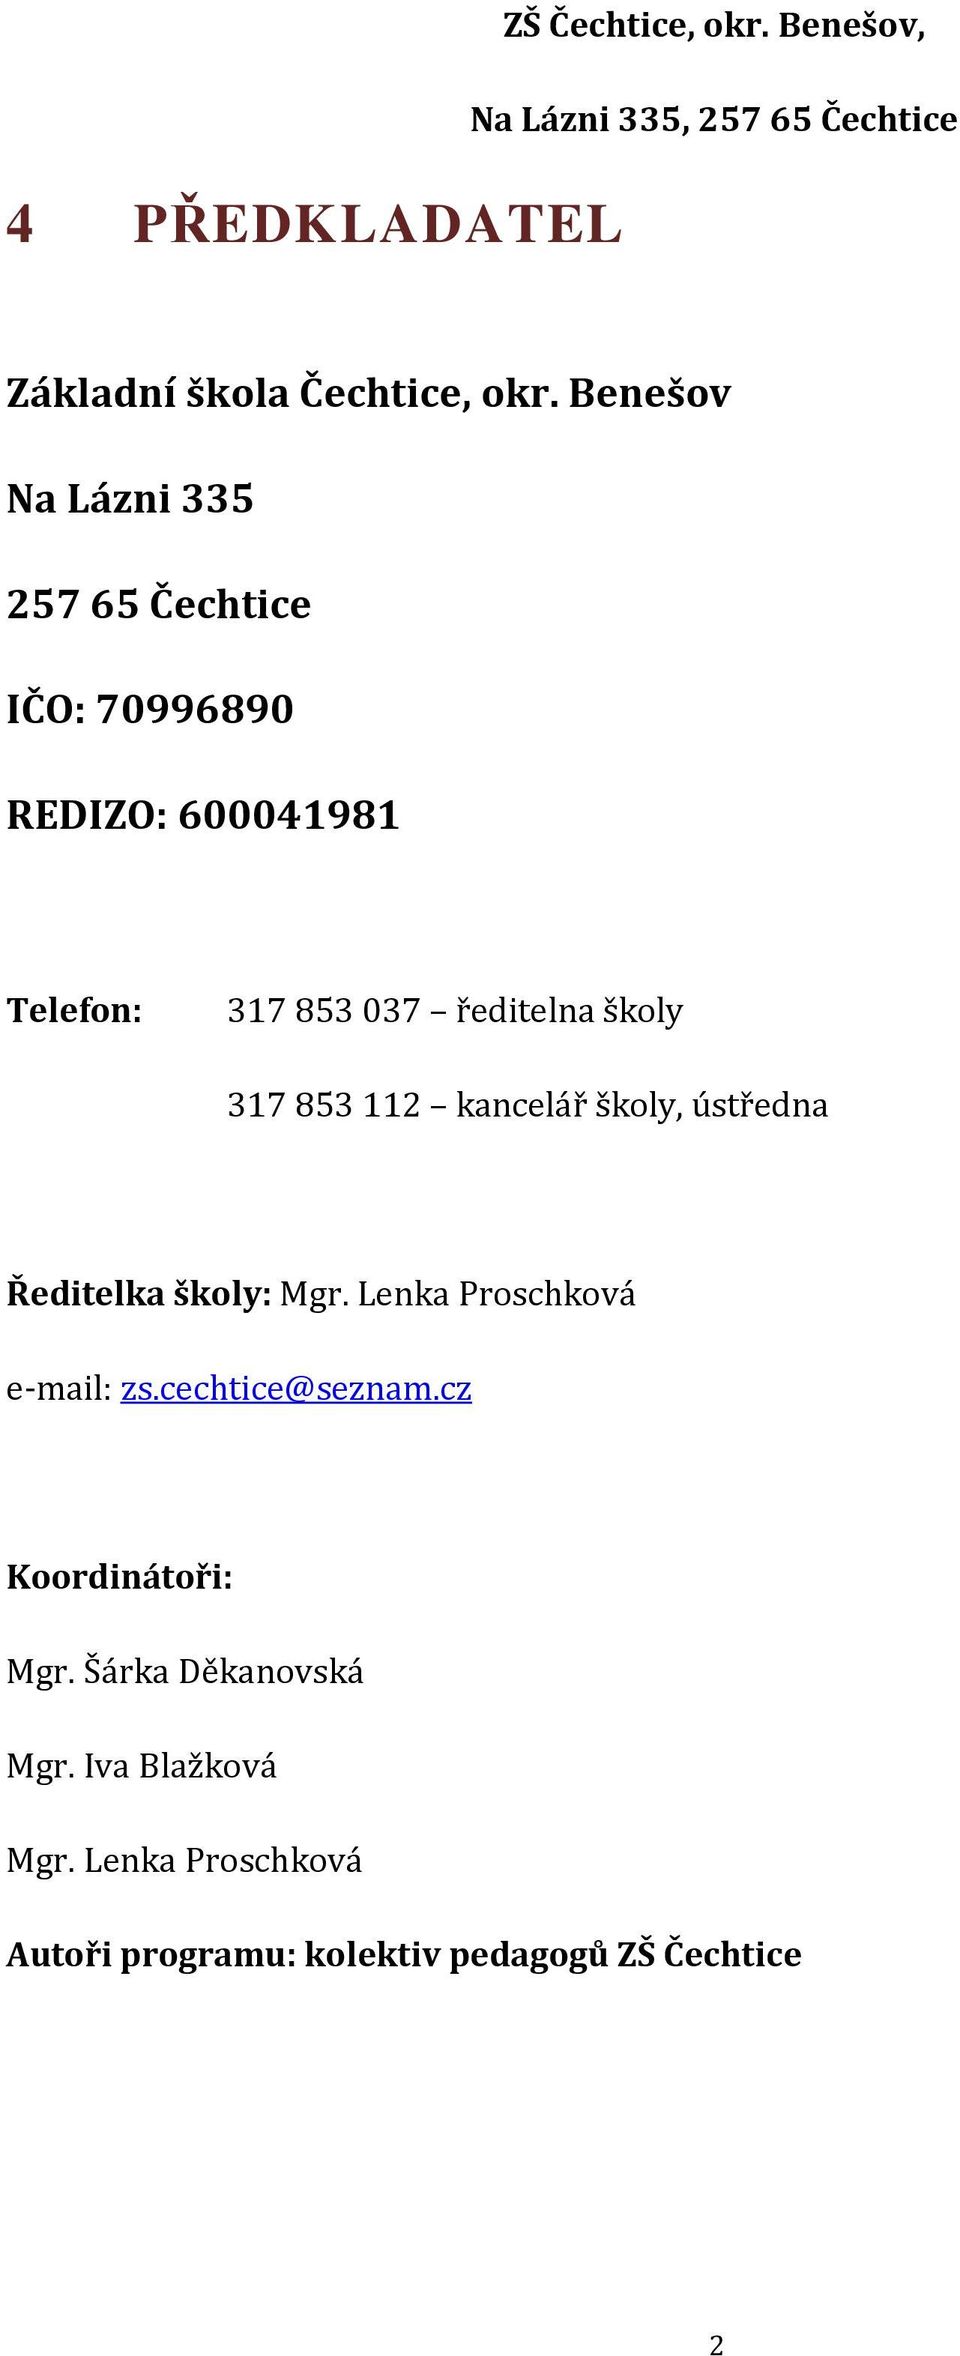 školy 317 853 112 kancelář školy, ústředna Ředitelka školy: Mgr. Lenka Proschková e-mail: zs.